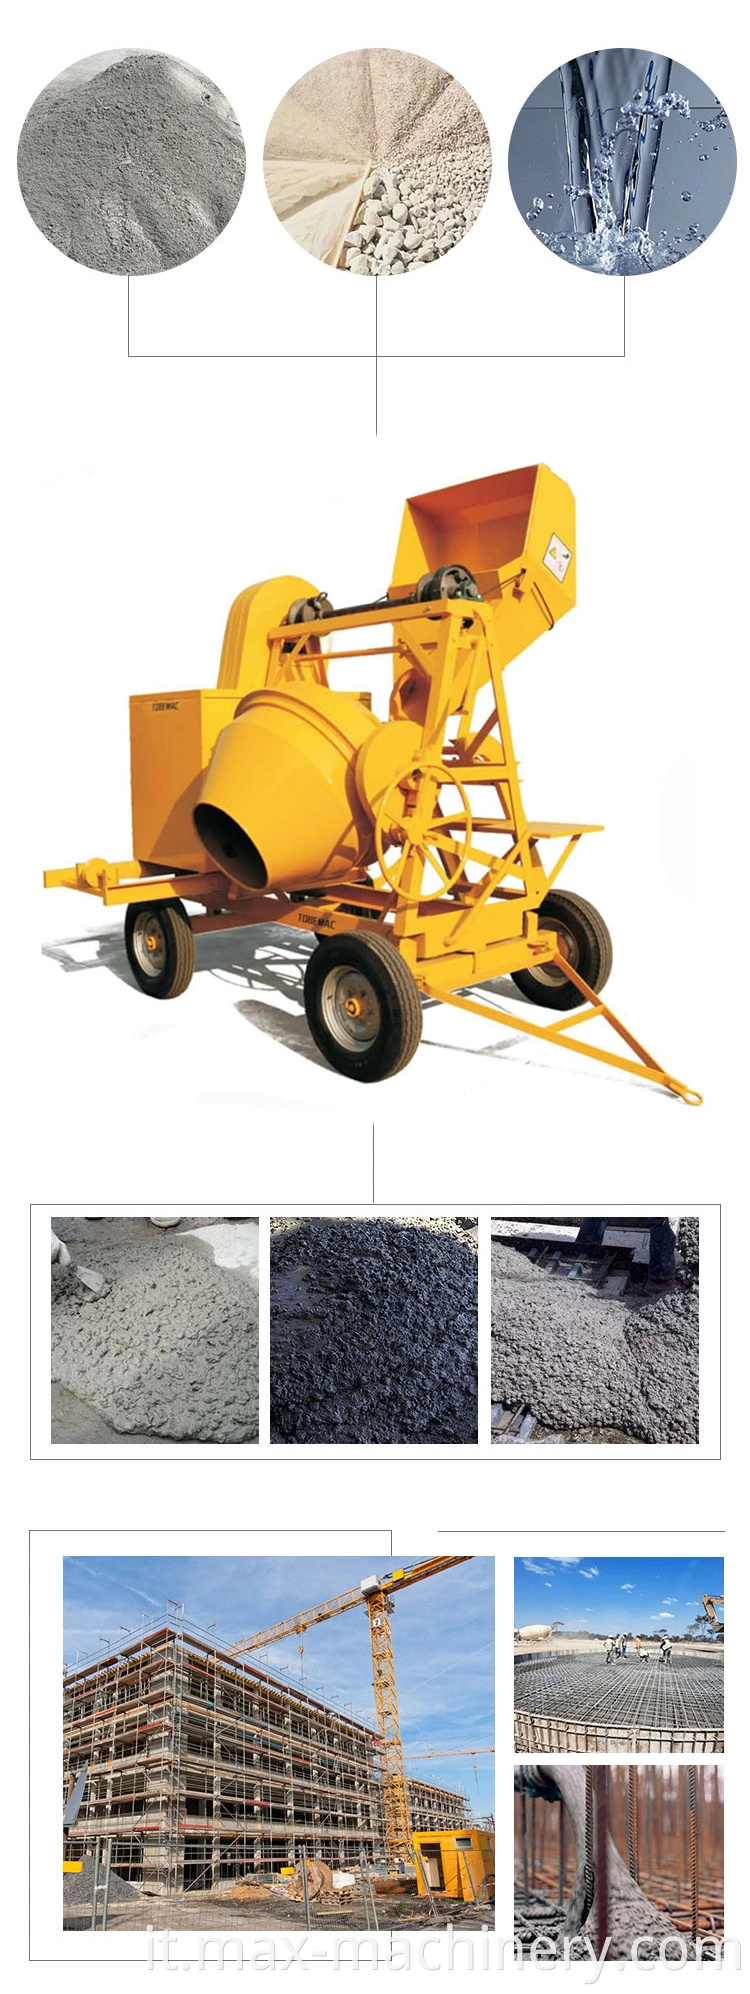 Mixer cemento diesel da 510 litri Beton con prezzo della macchina per miscelatore in cemento per argano / motore diesel in Ghana